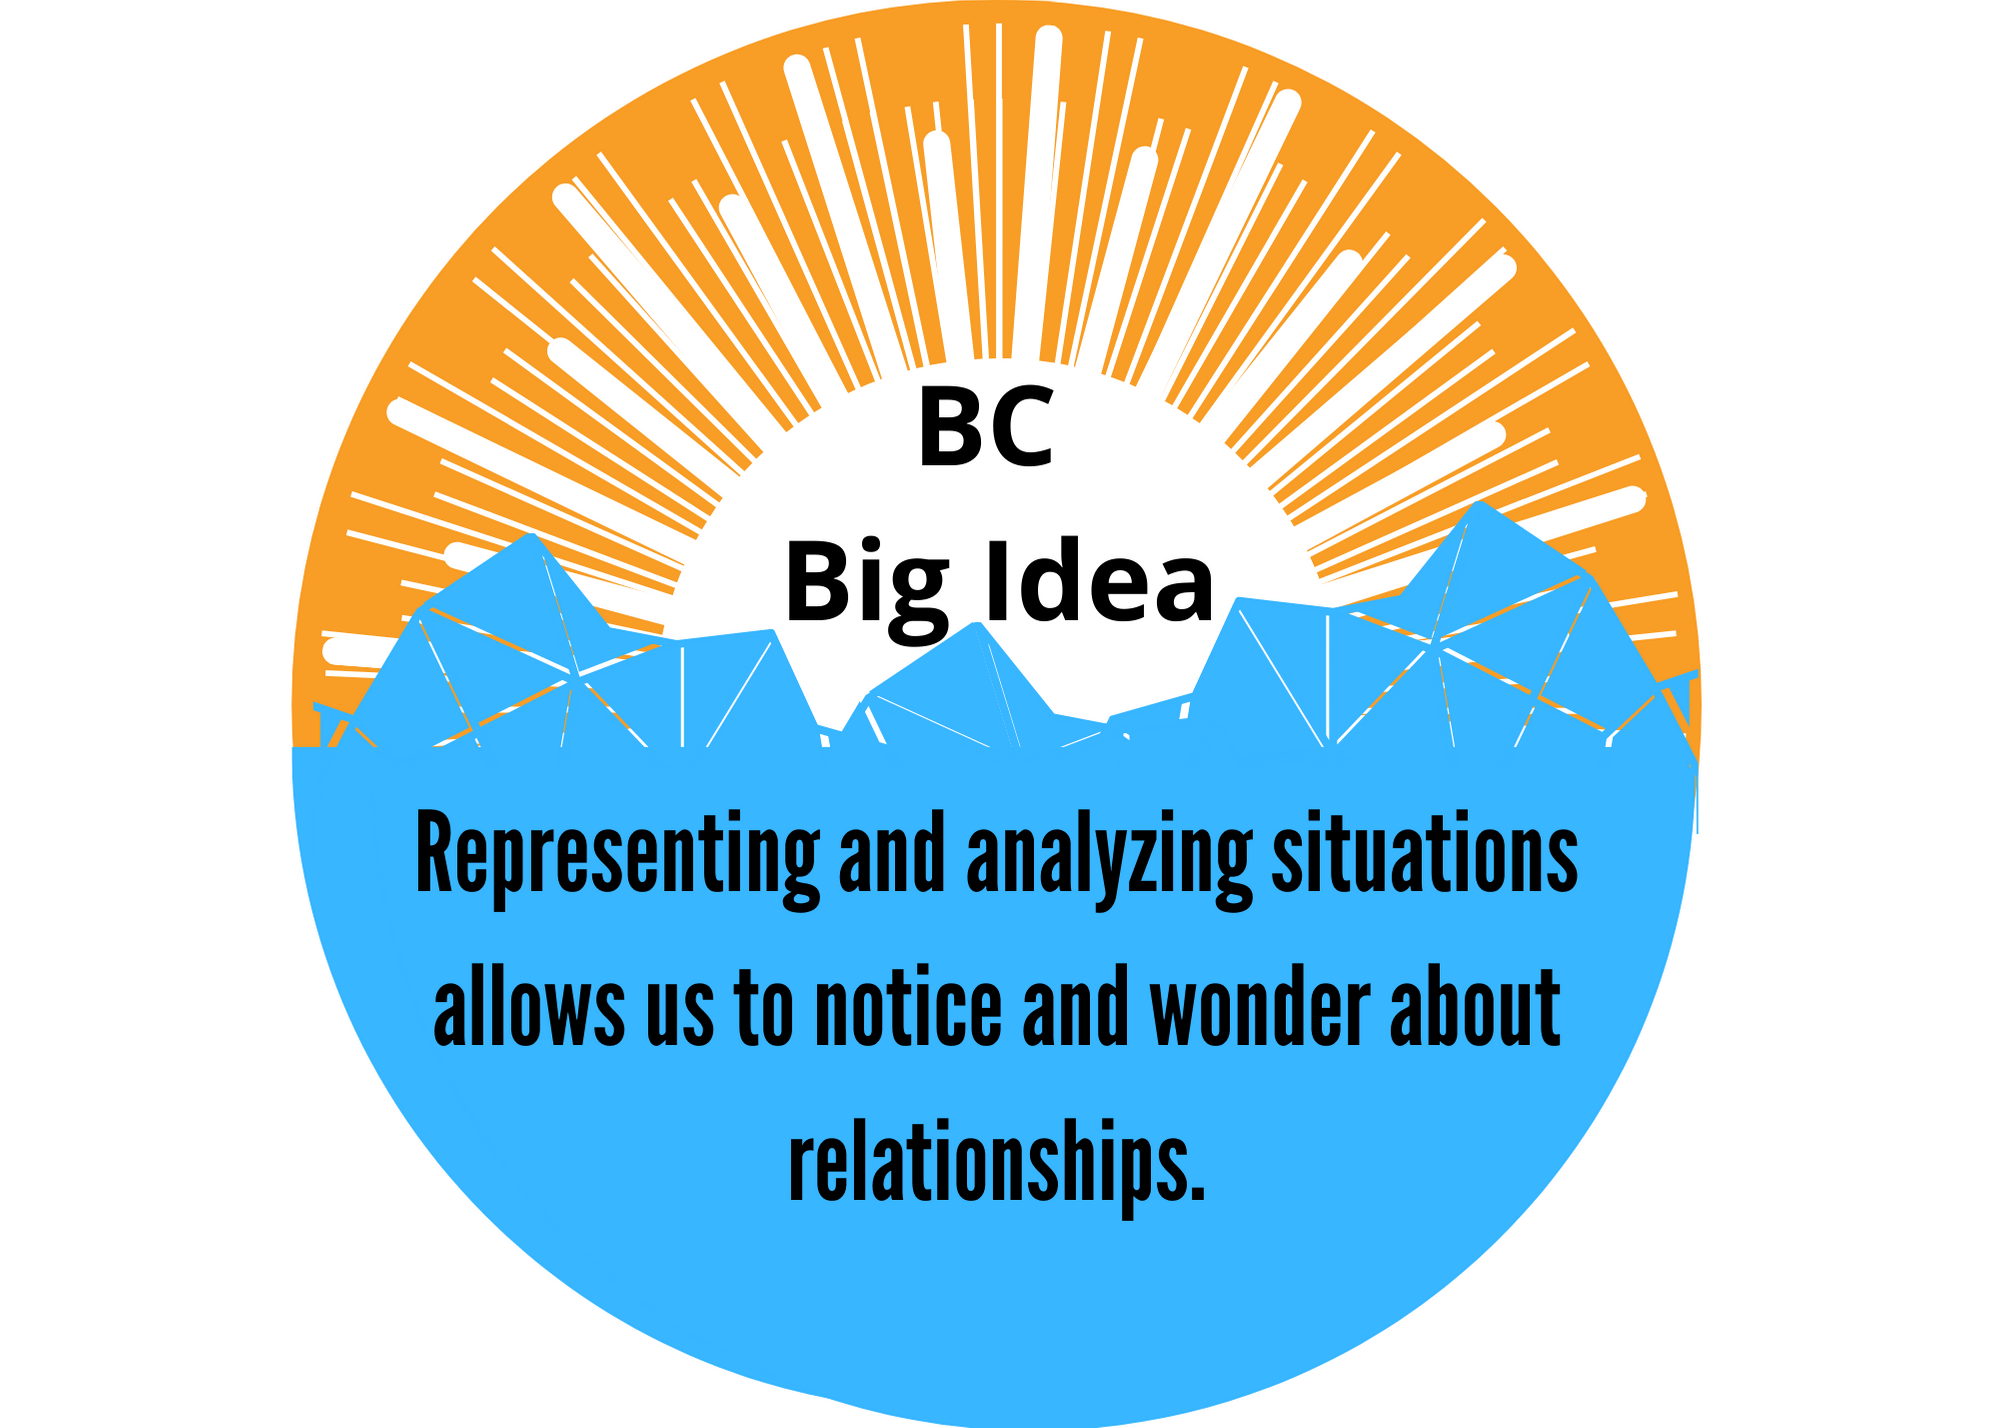 BC Big Idea #5